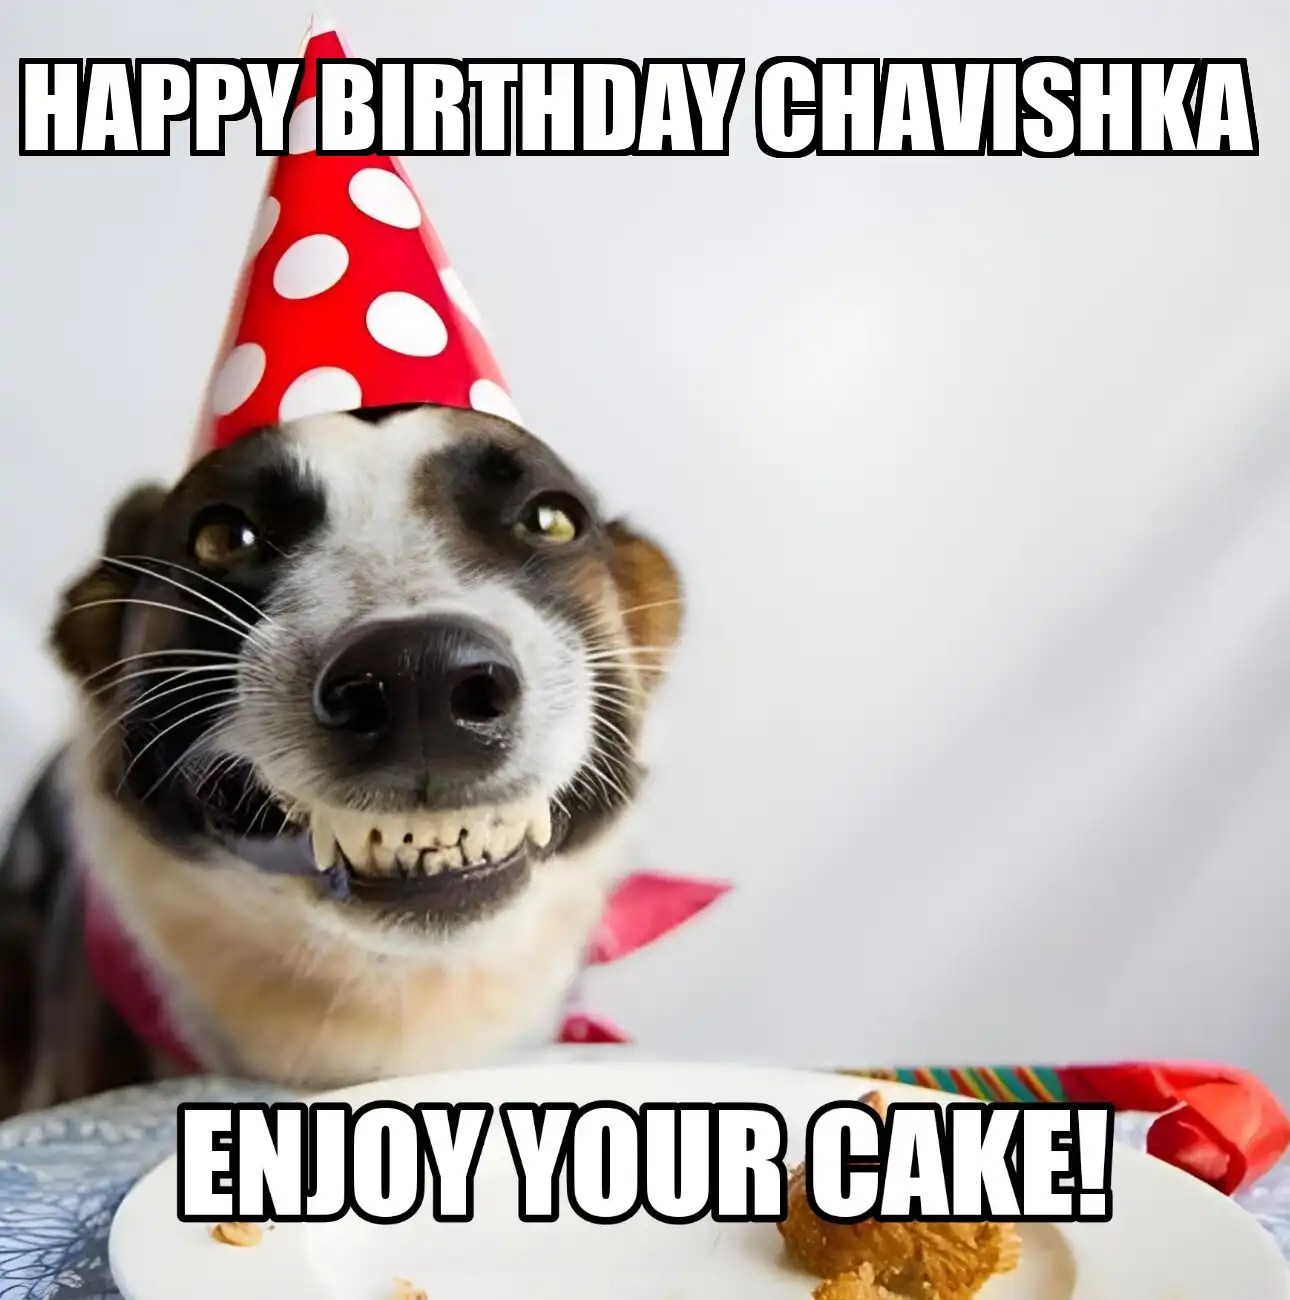 Happy Birthday Chavishka Enjoy Your Cake Dog Meme